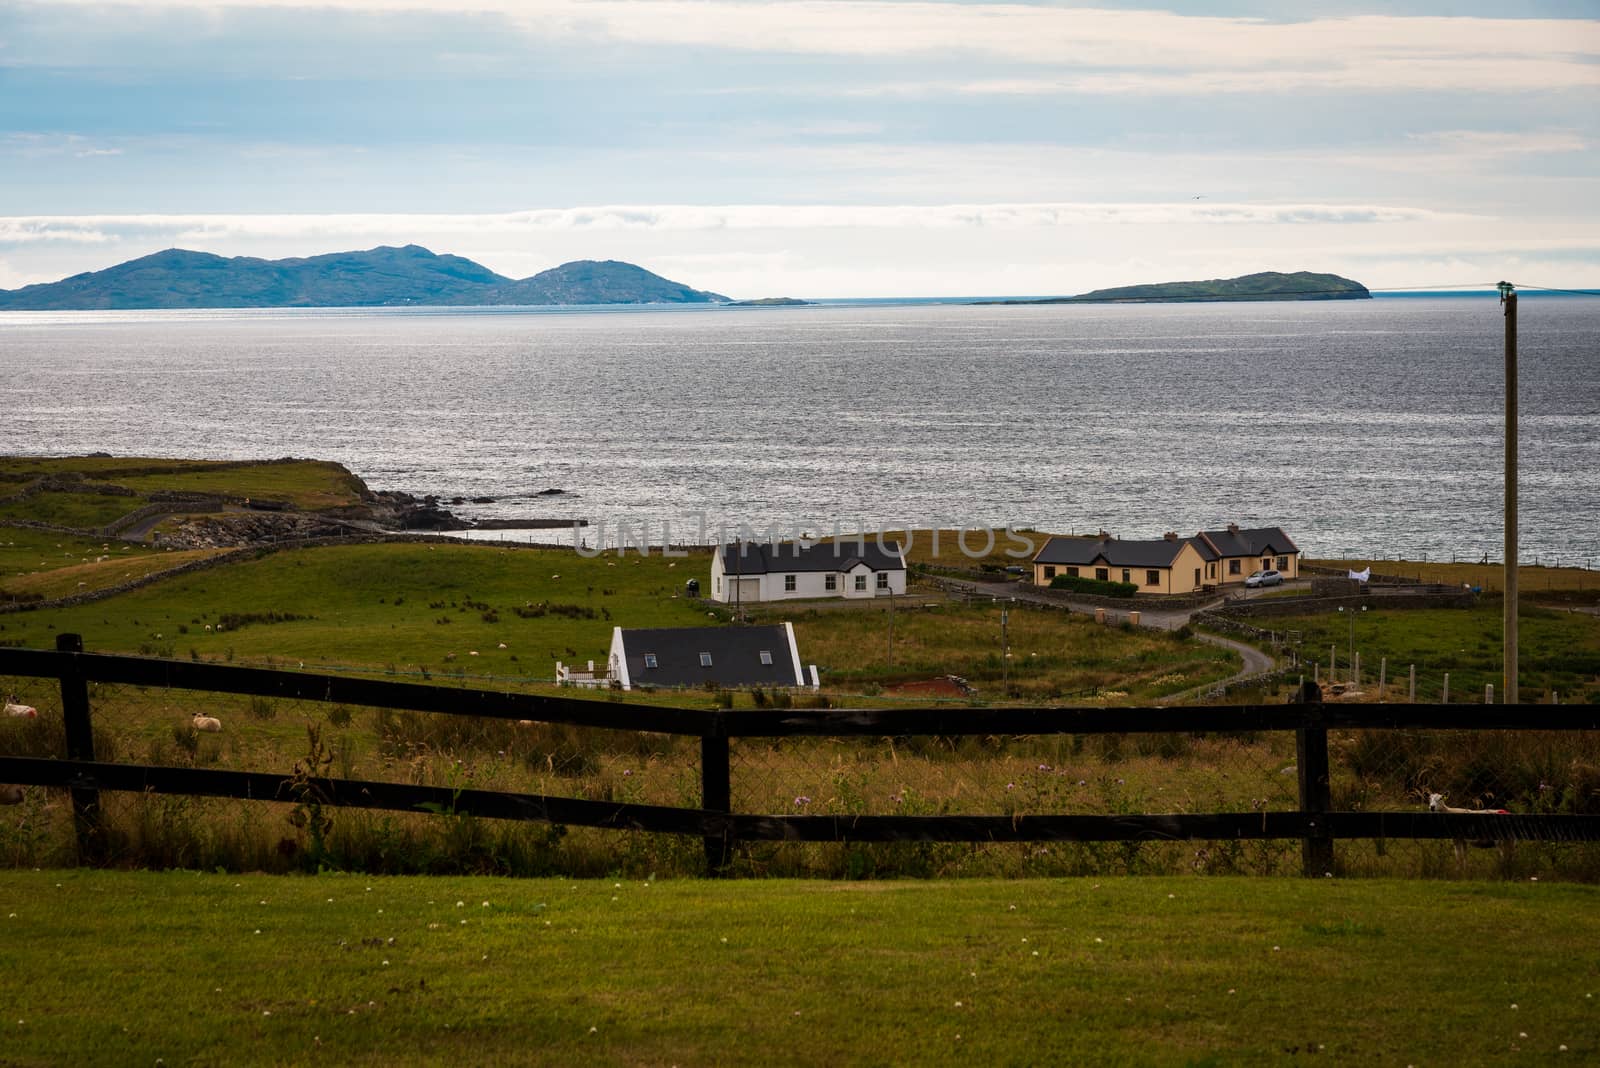 Farmhouses and sheep on the coast of the Irish Sea.